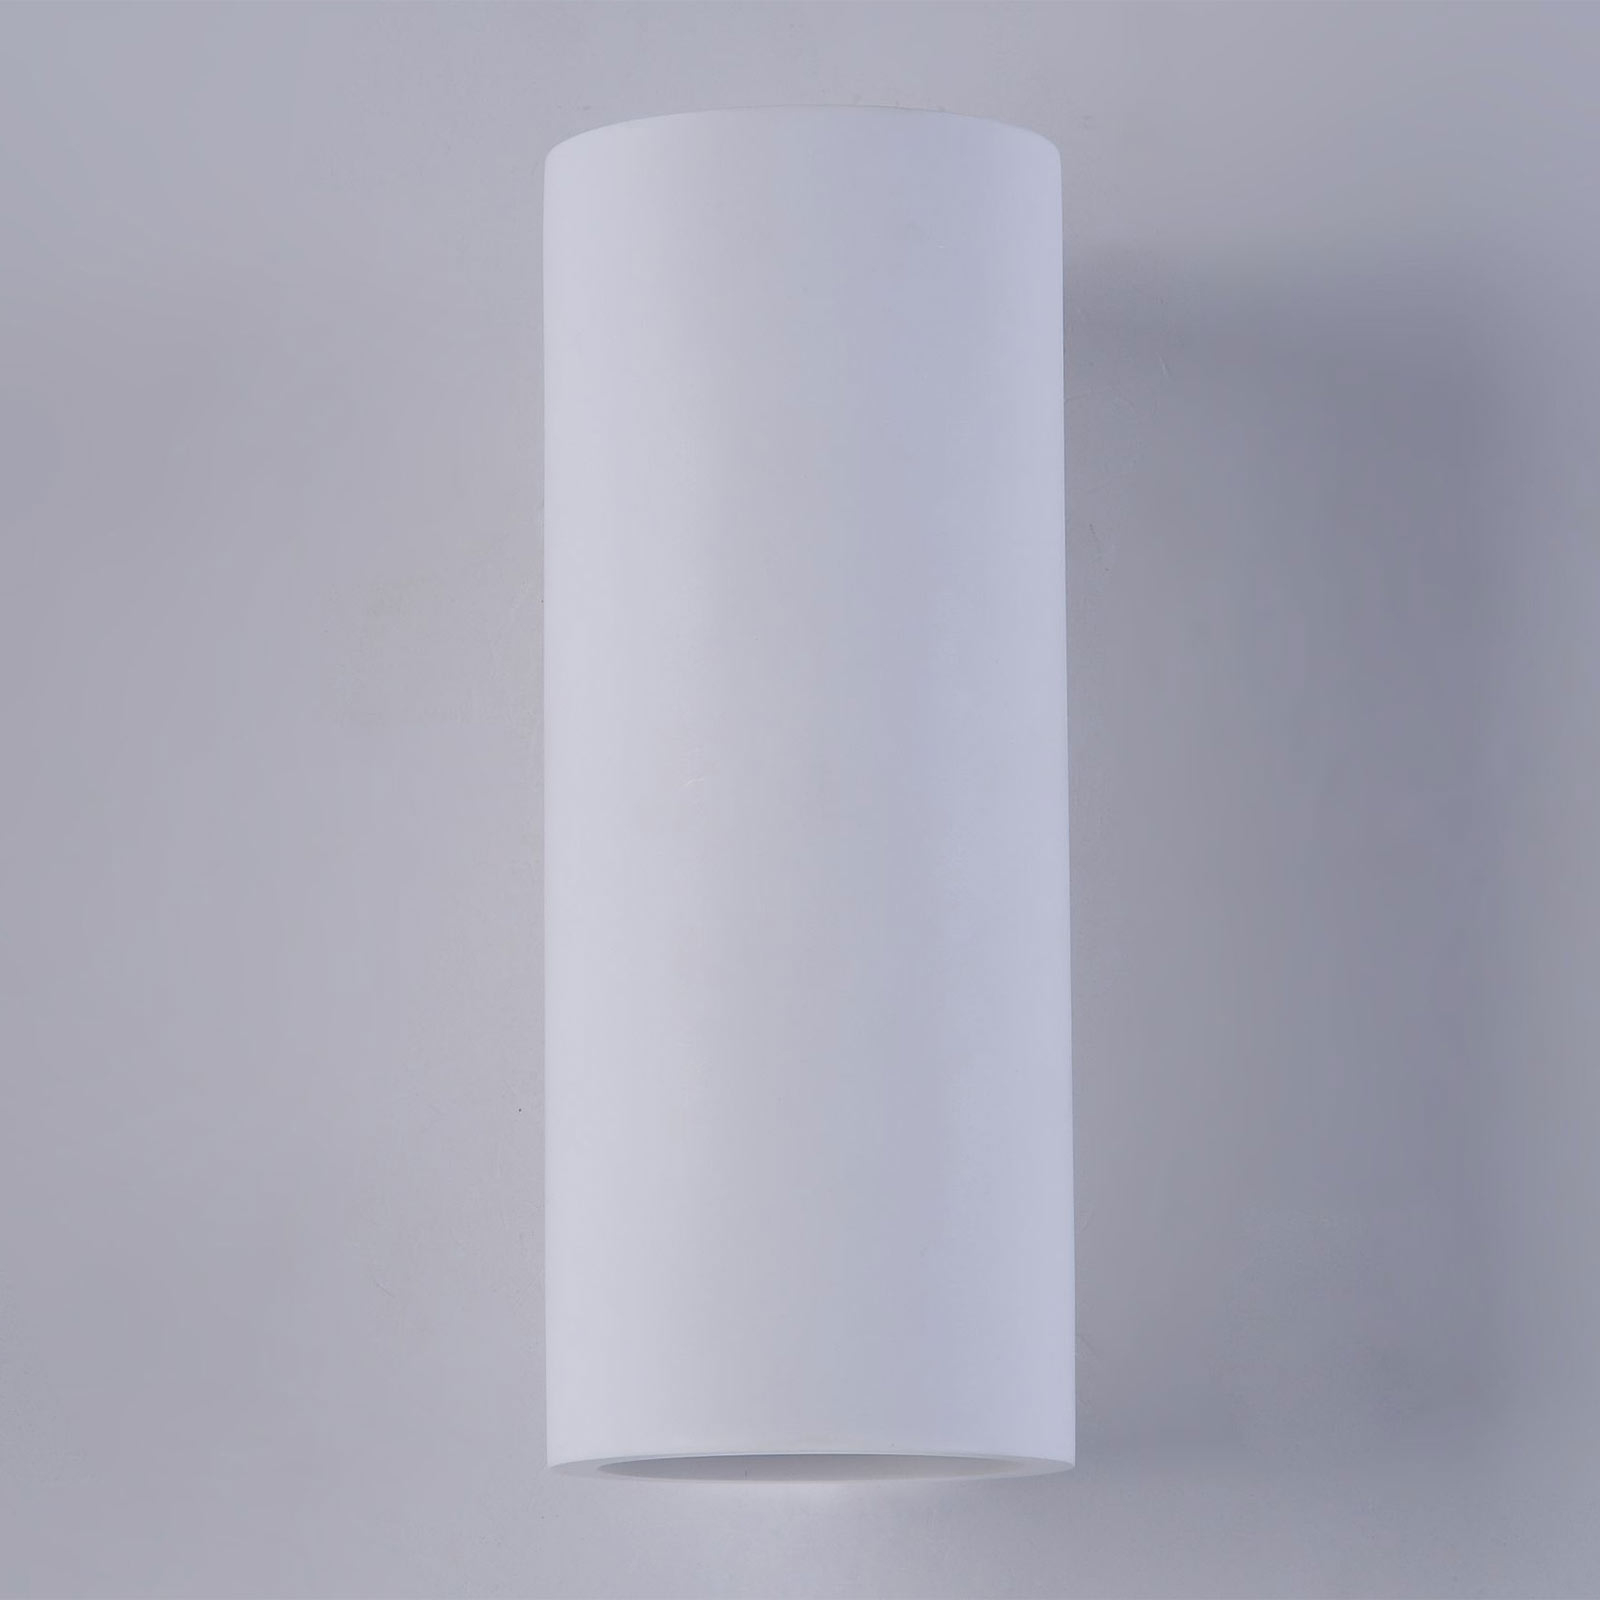 Lampa ścienna Parma z gipsu, 8x20 cm